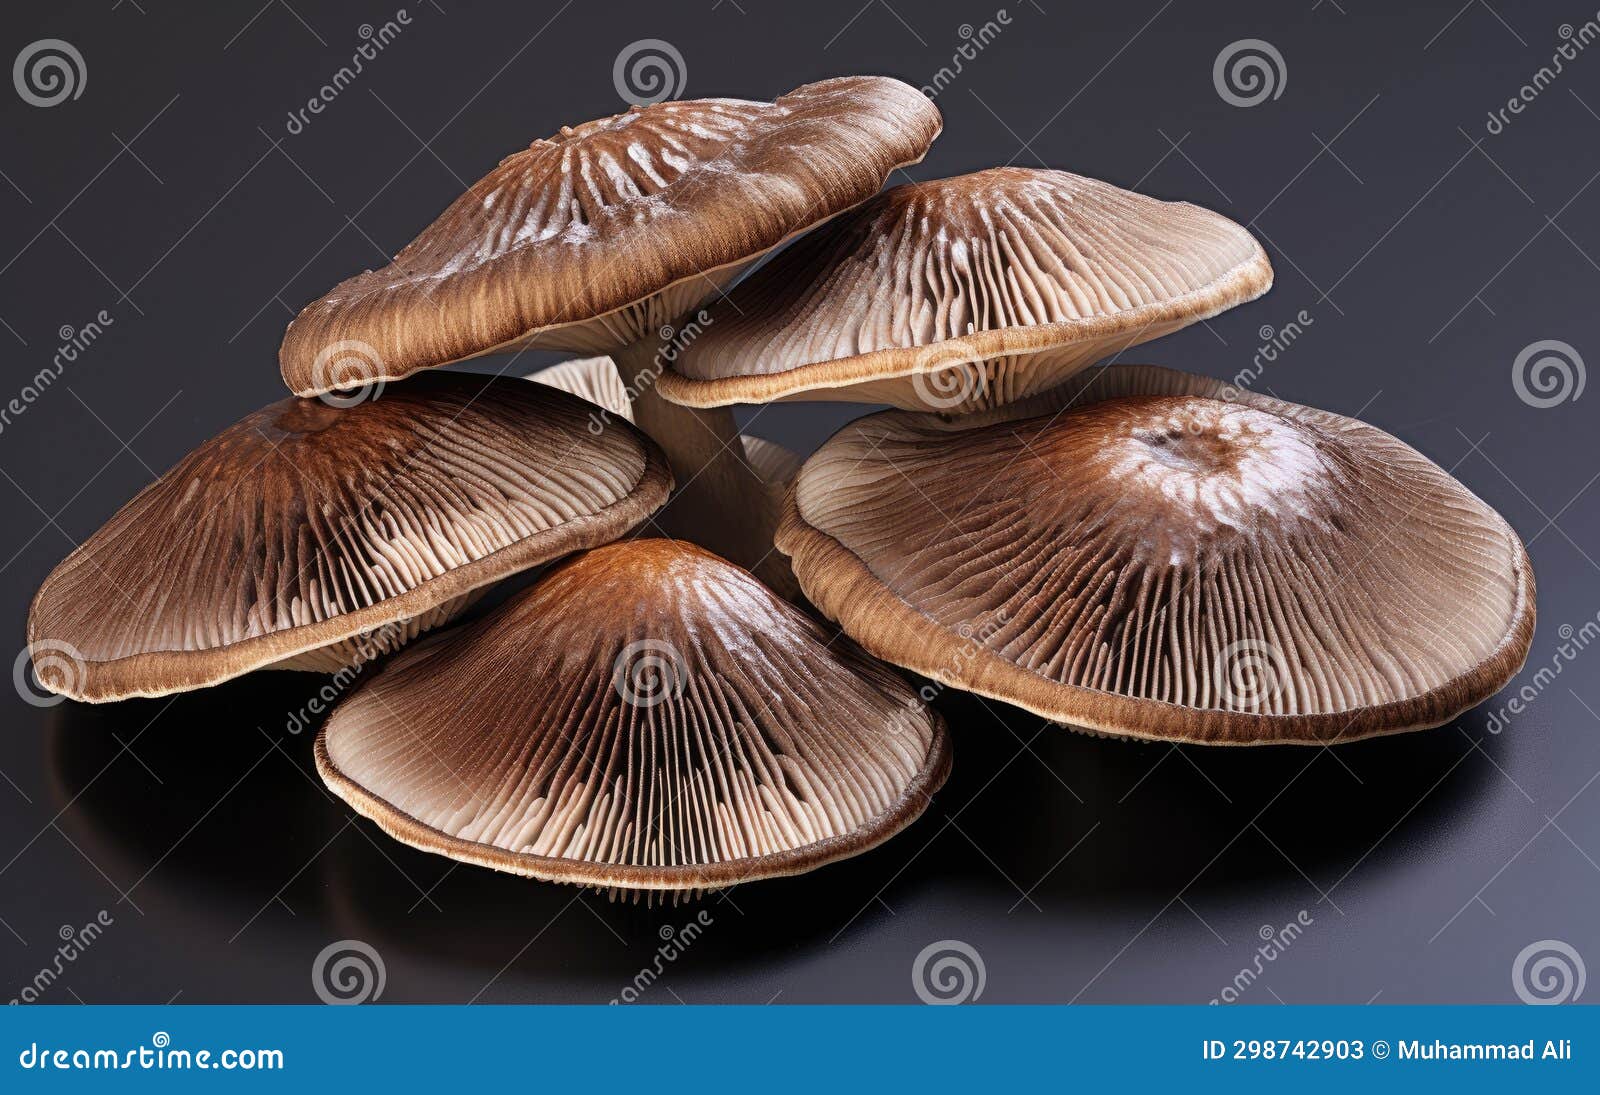 mushroom elegance